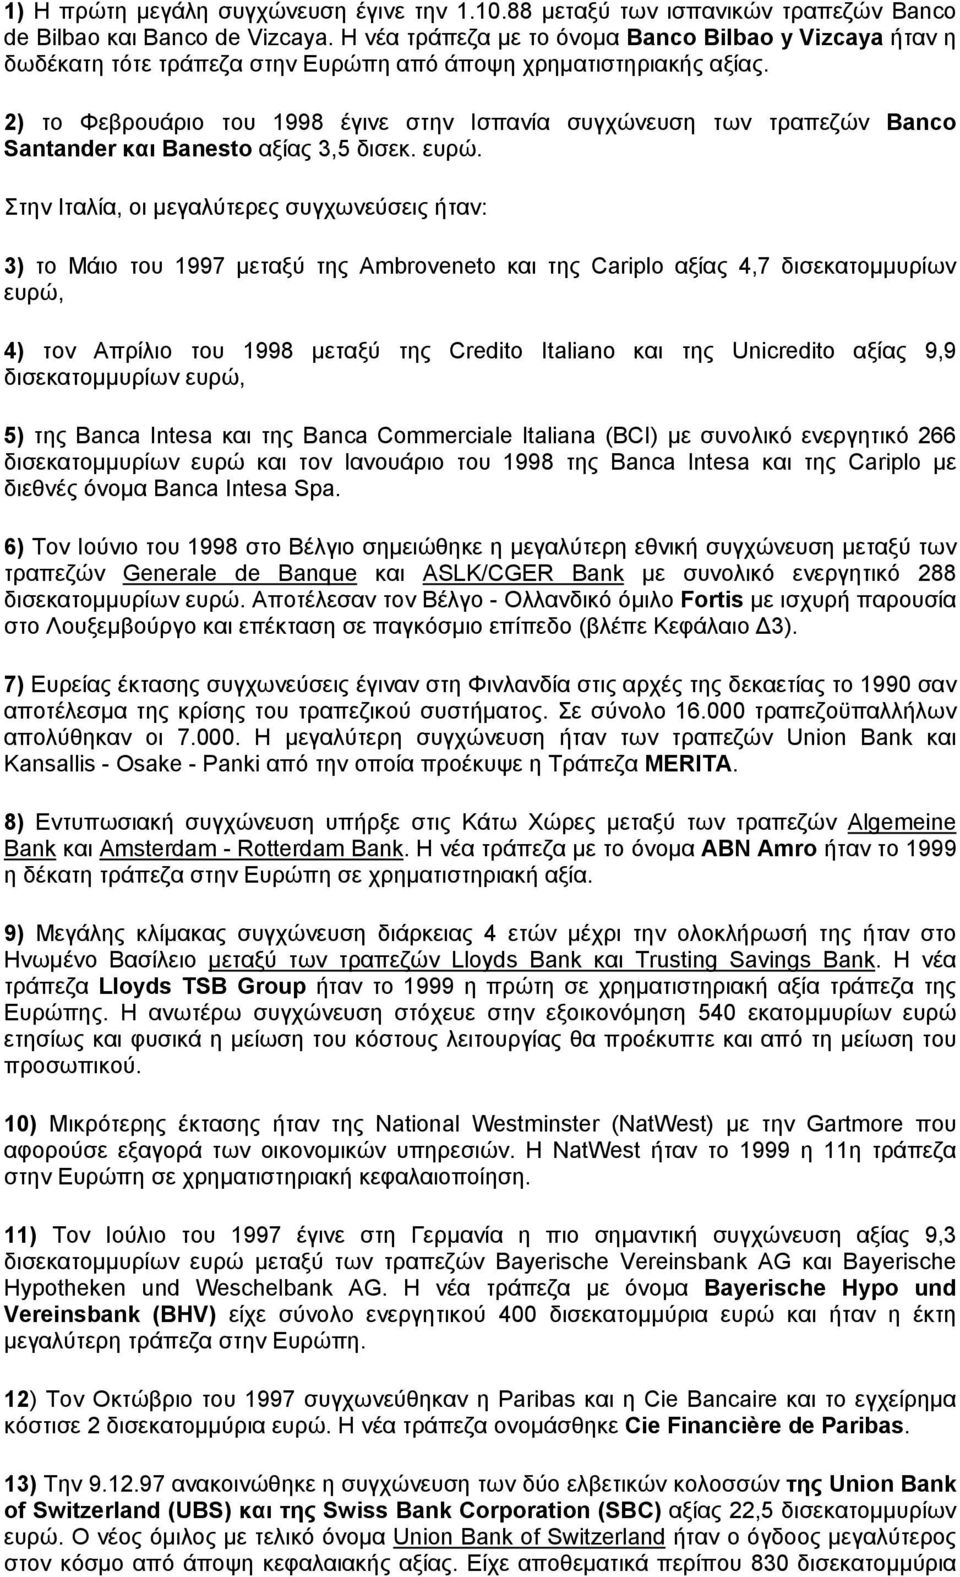 2) το Φεβρουάριο του 1998 έγινε στην Ισπανία συγχώνευση των τραπεζών Banco Santander και Banesto αξίας 3,5 δισεκ. ευρώ.